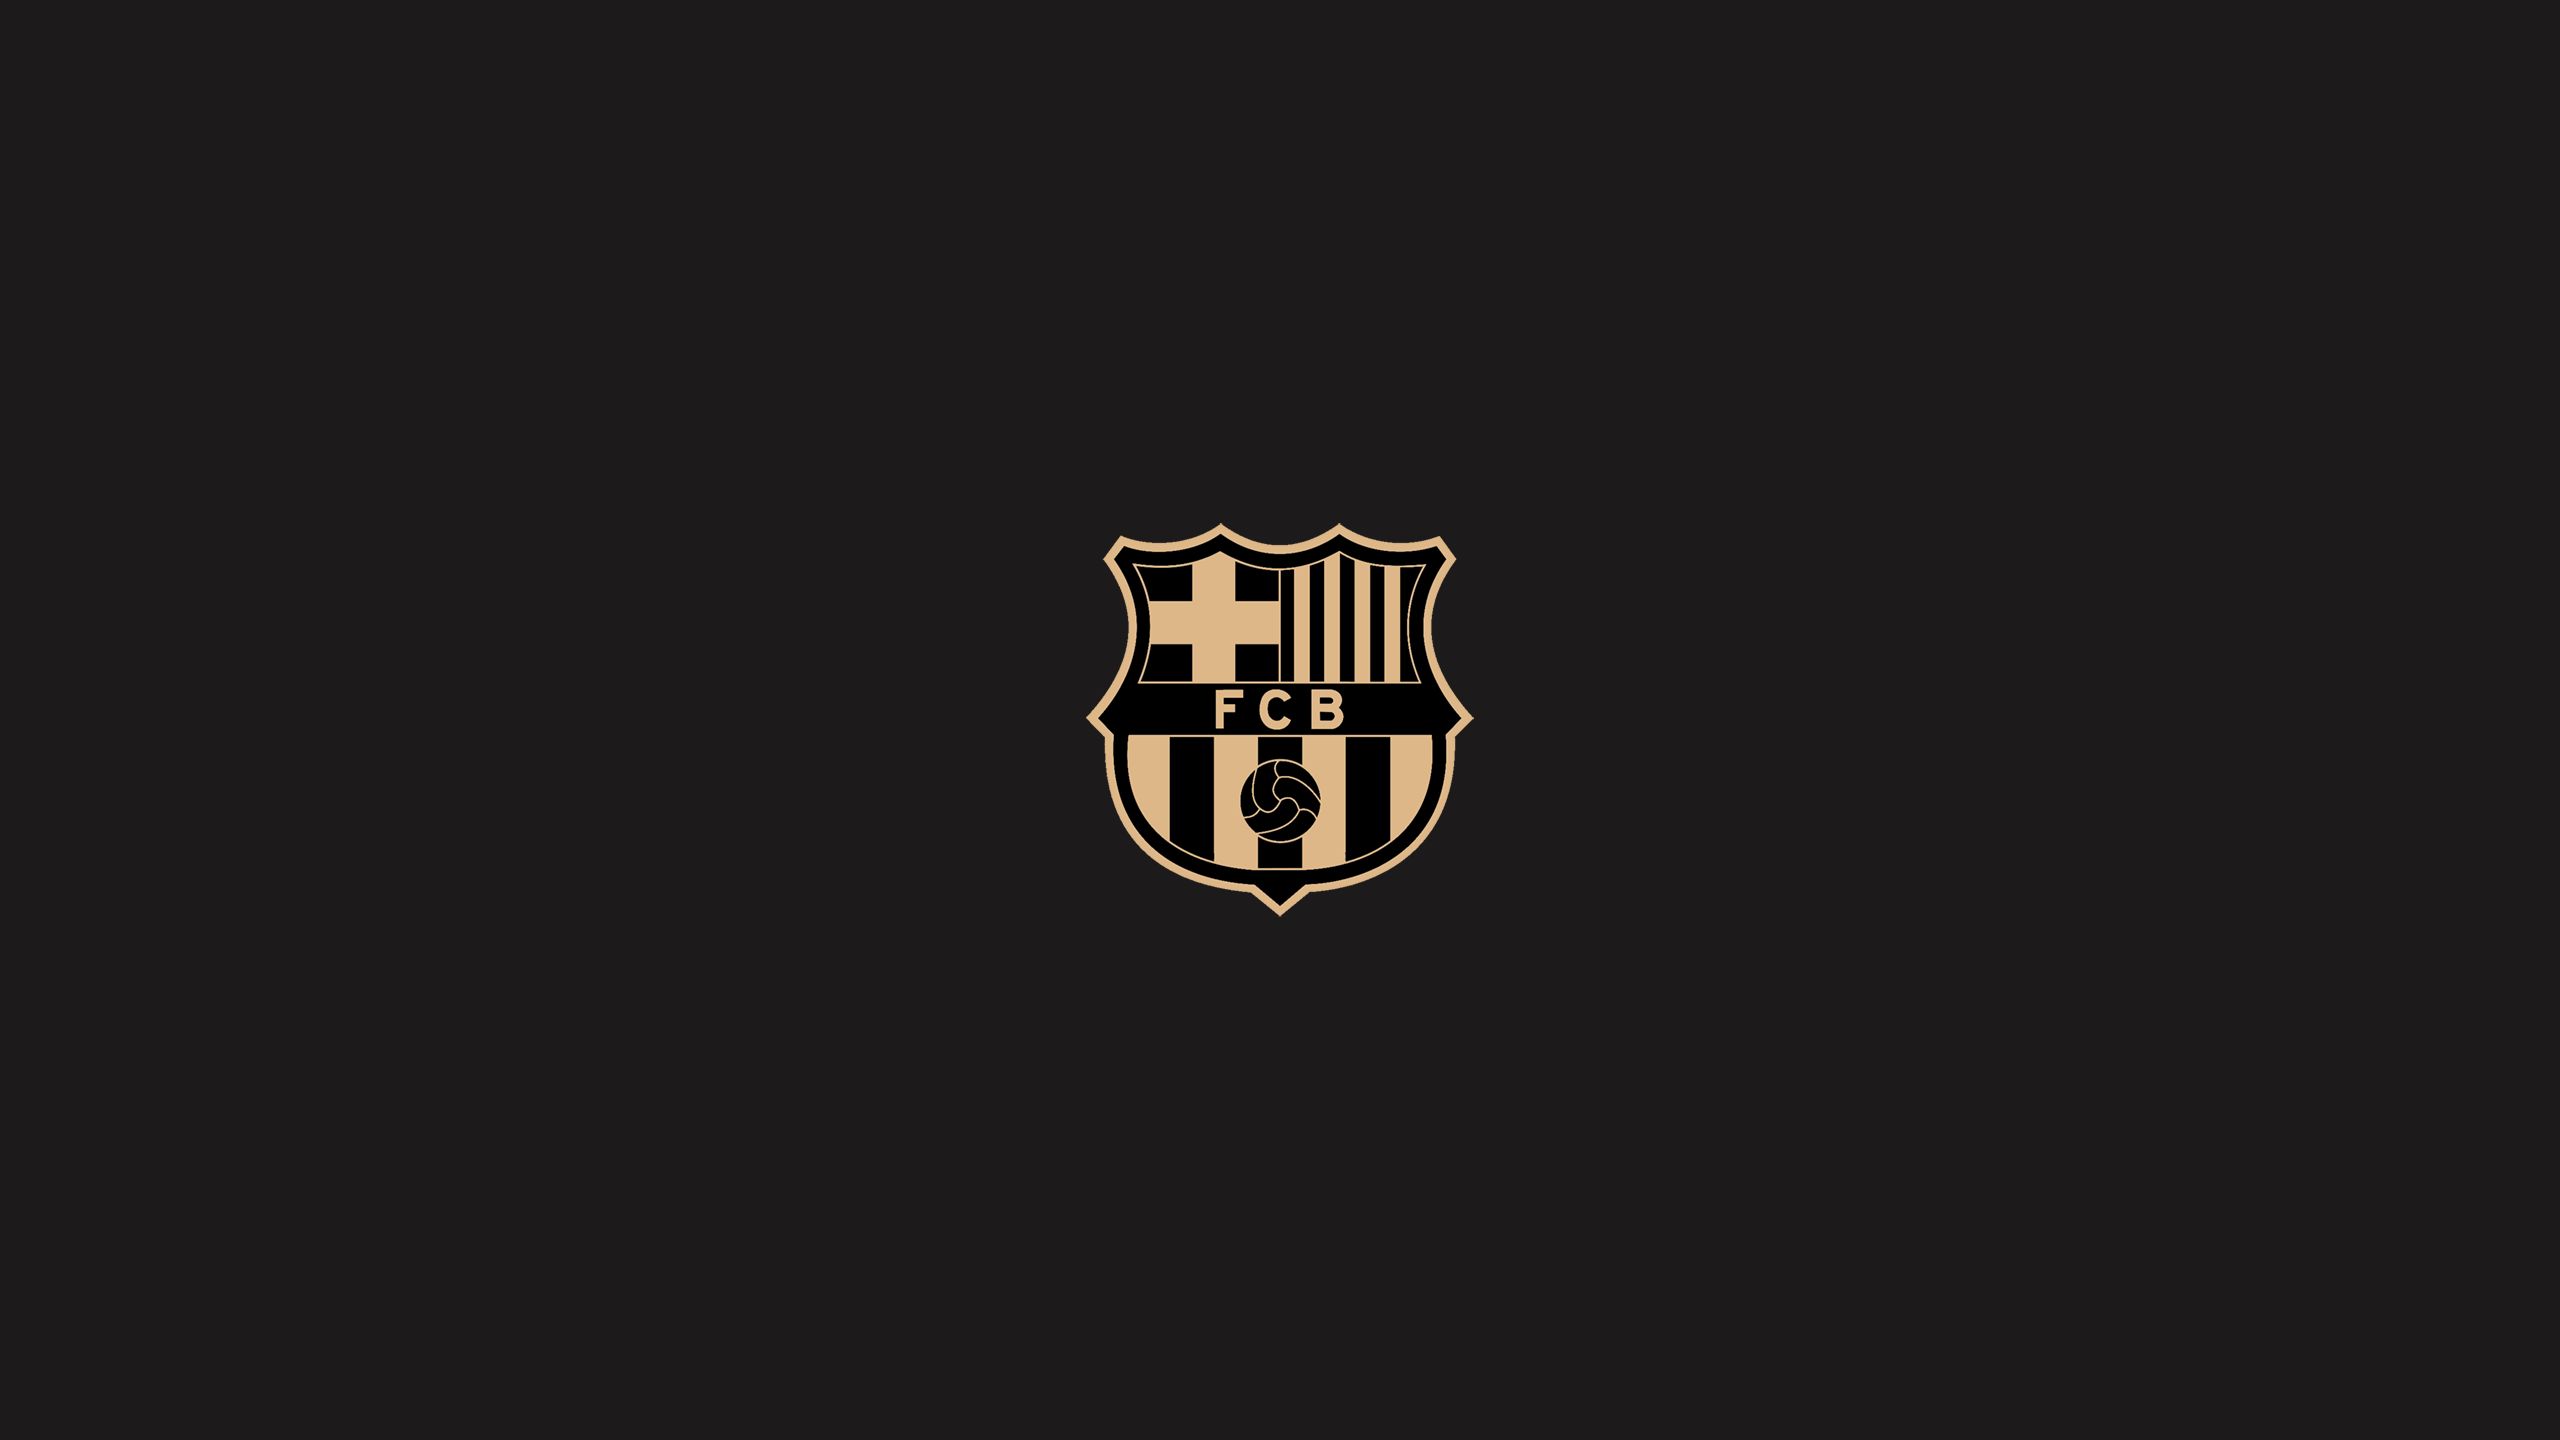 fc barcelona, crest, sports, emblem, logo, soccer, symbol wallpapers for tablet